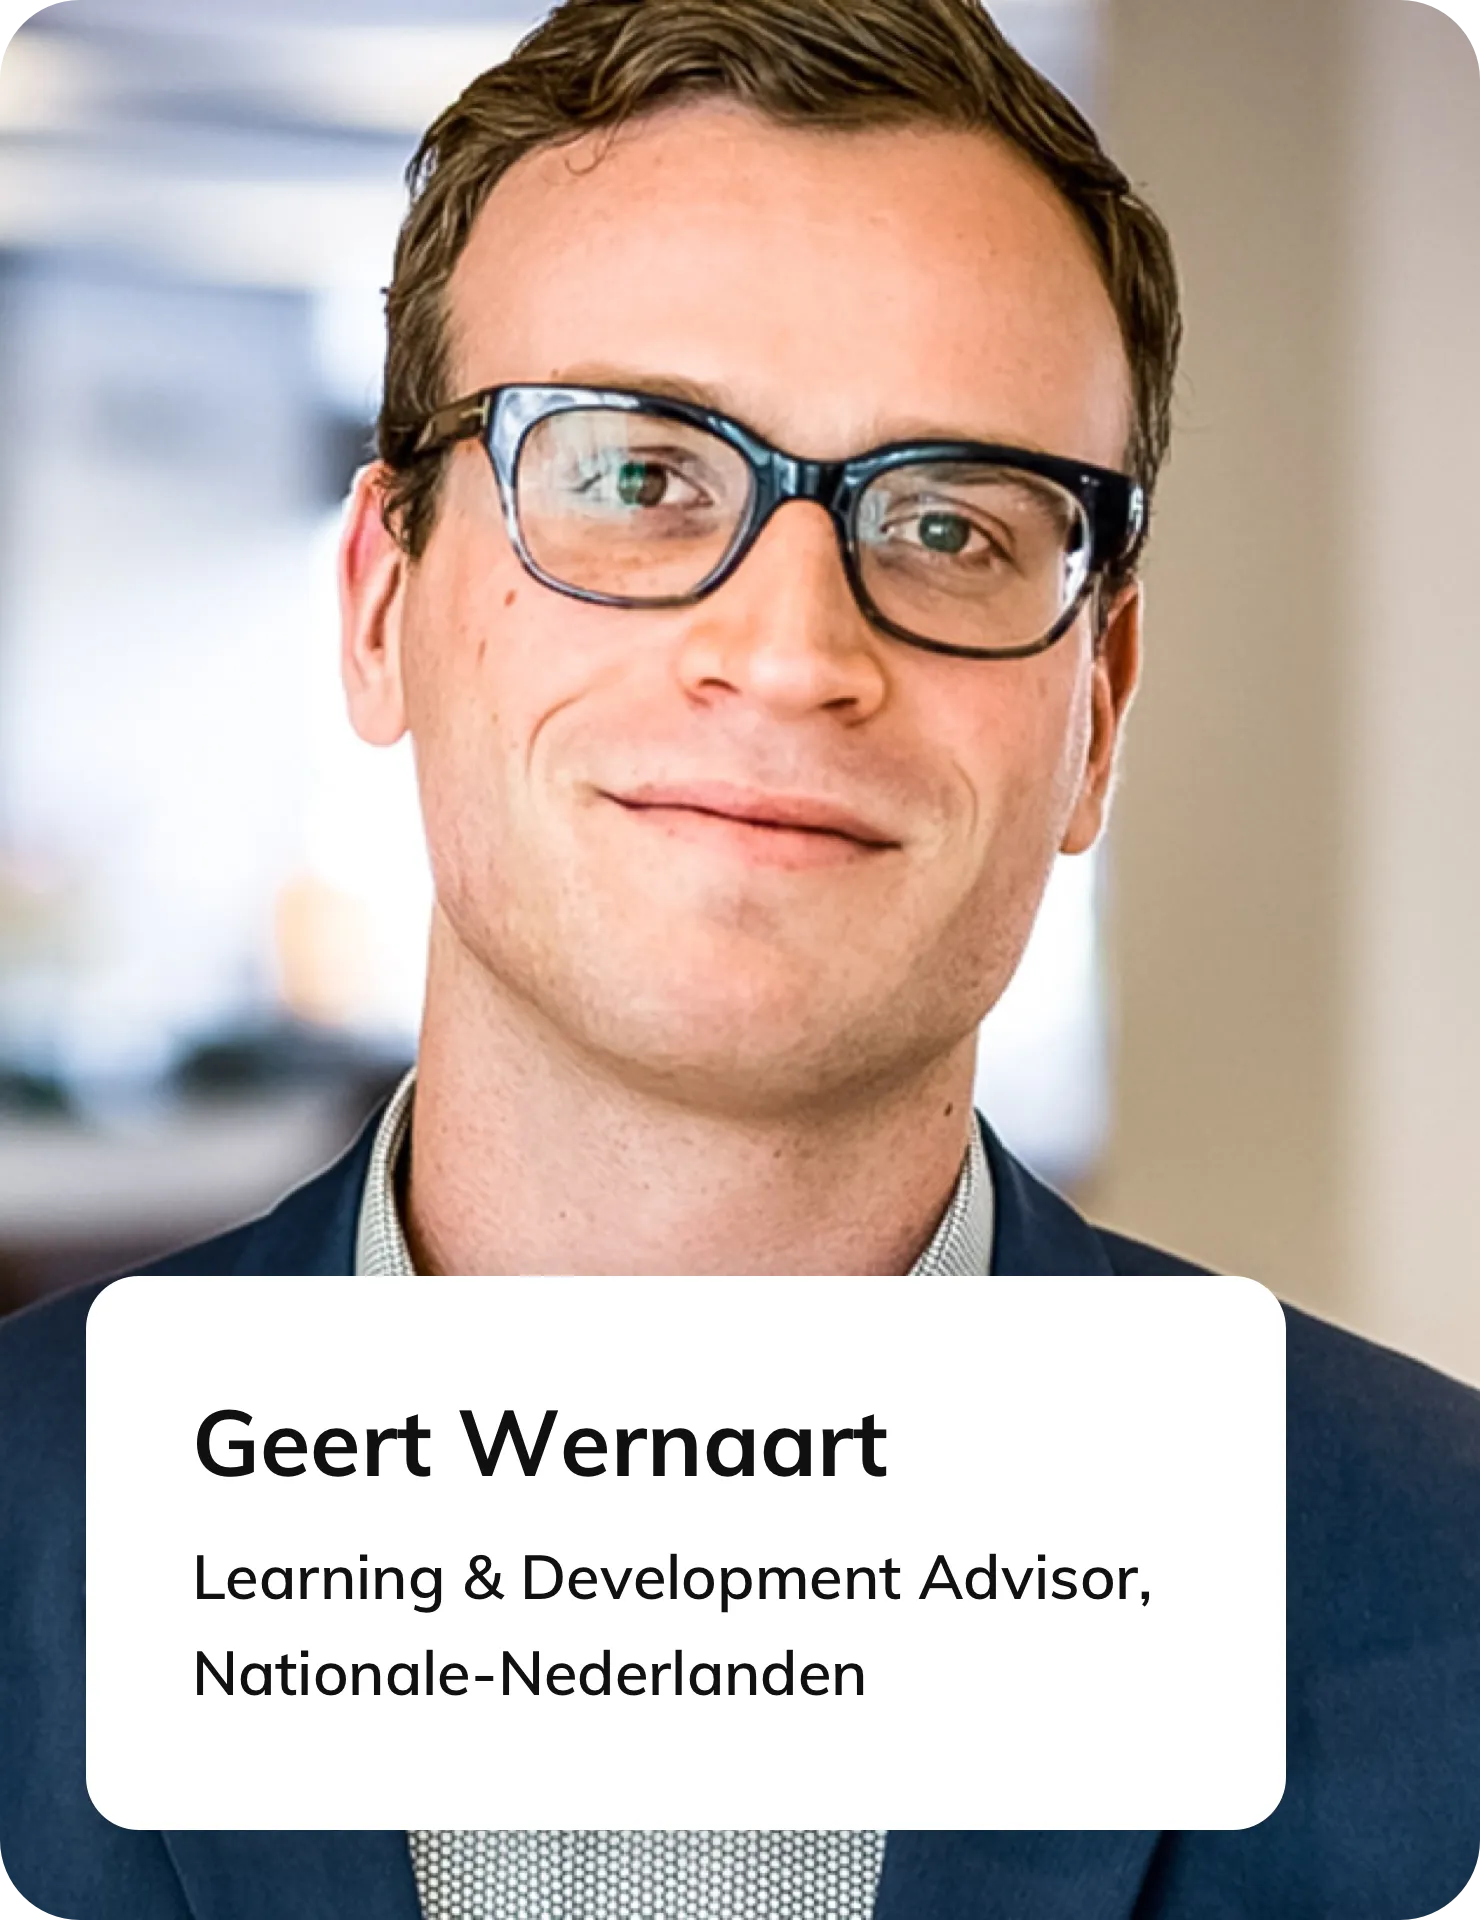 Geert Wernaart, Voormalig Senior Learning & Development Advisor bij Nationale Nederlanden